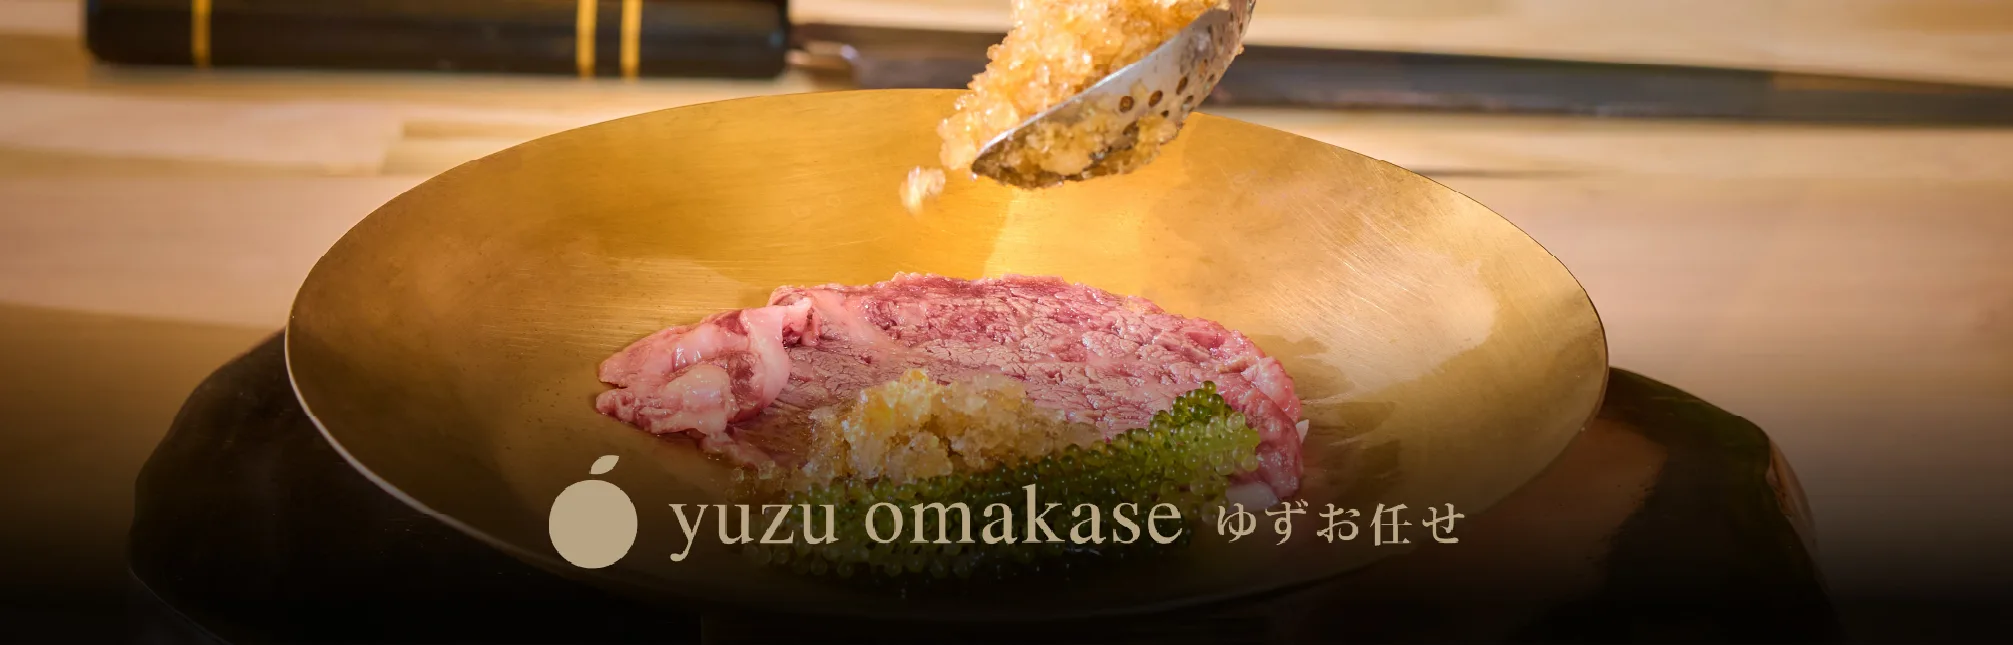 Authentic Japanese Cuisine